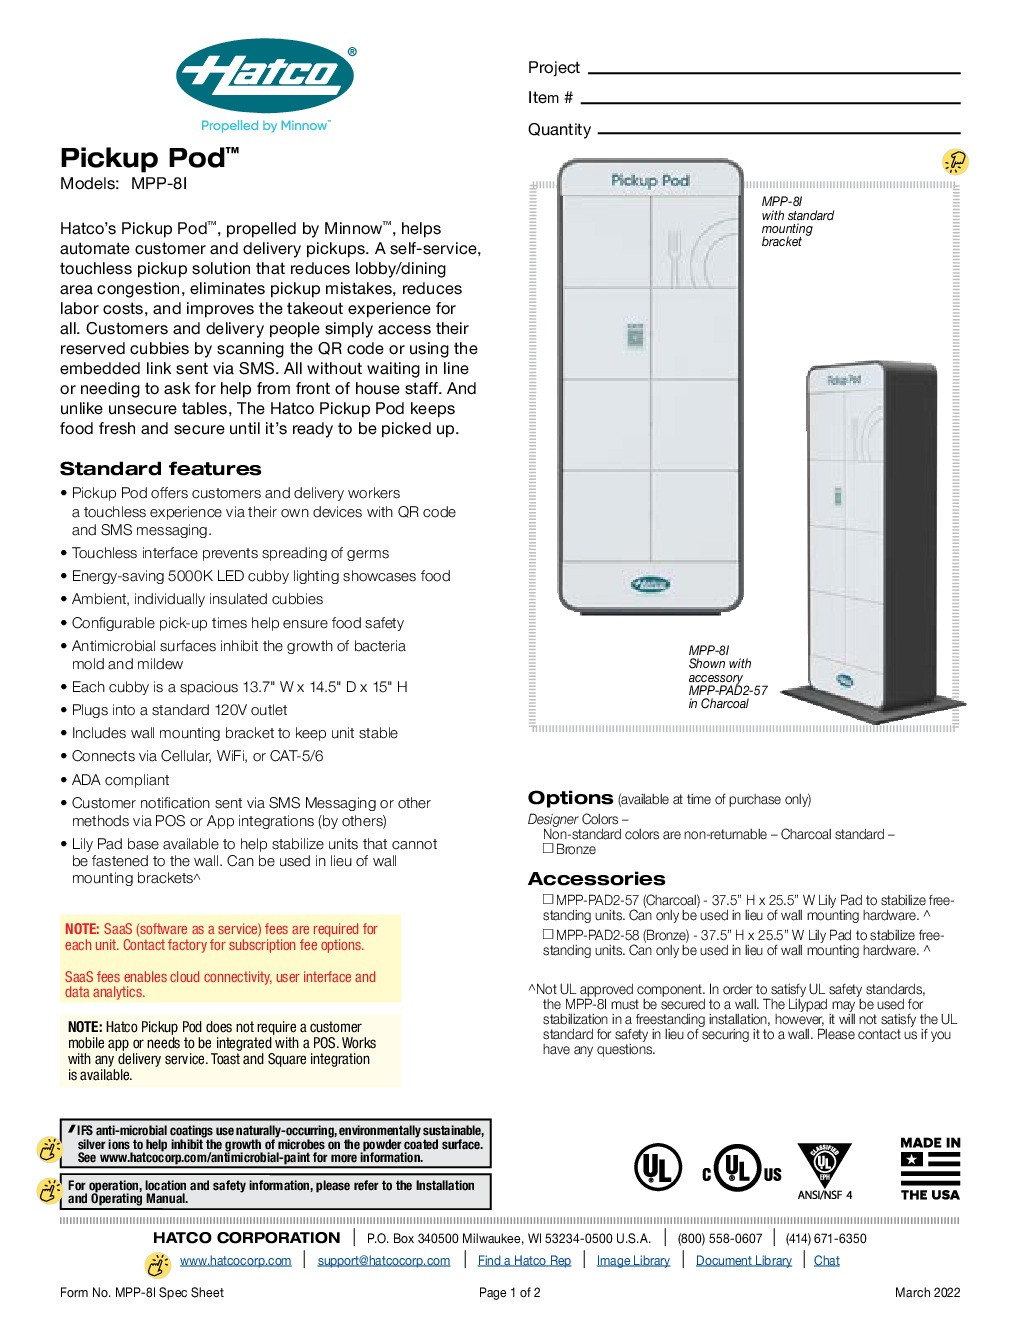 Hatco MPP-8I Floor Model Food Safe Locker